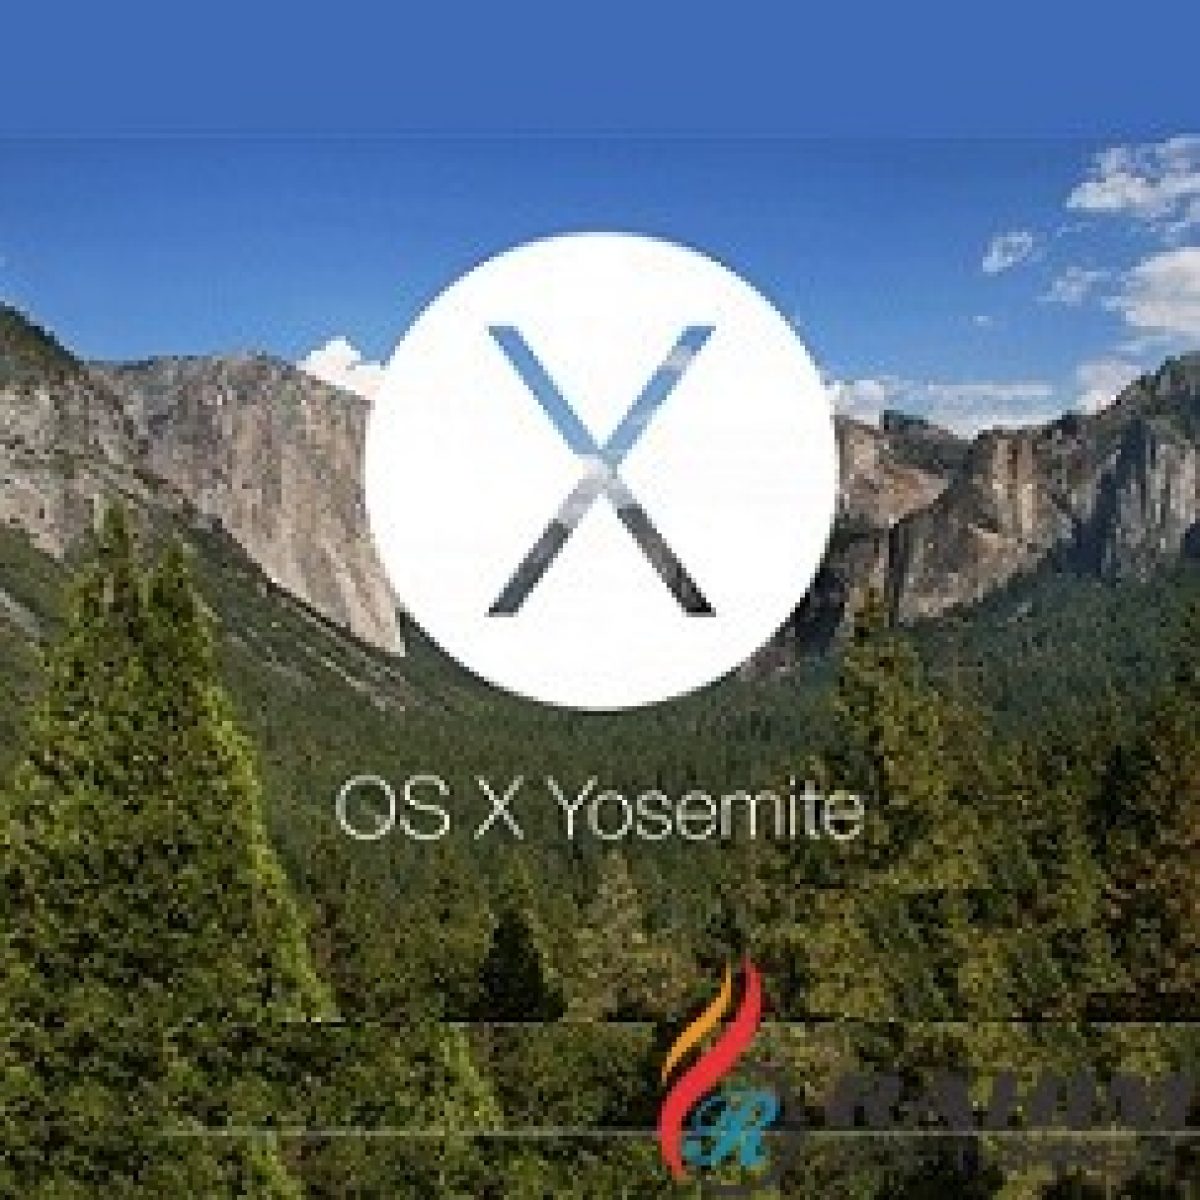 Os x yosemite installer download